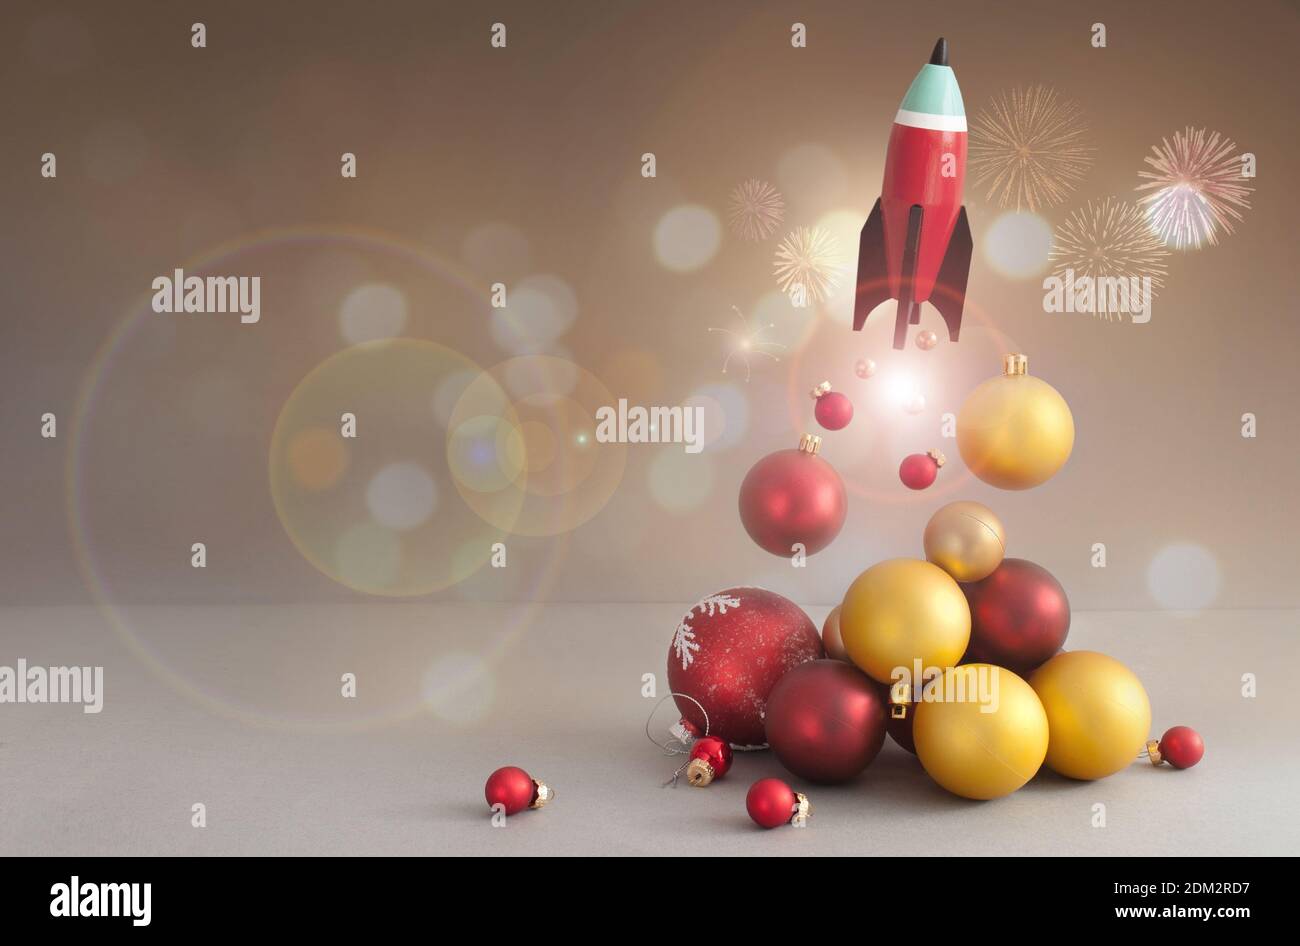 Cohete de juguete despegue, con bolas de Navidad rojas y doradas Foto de stock